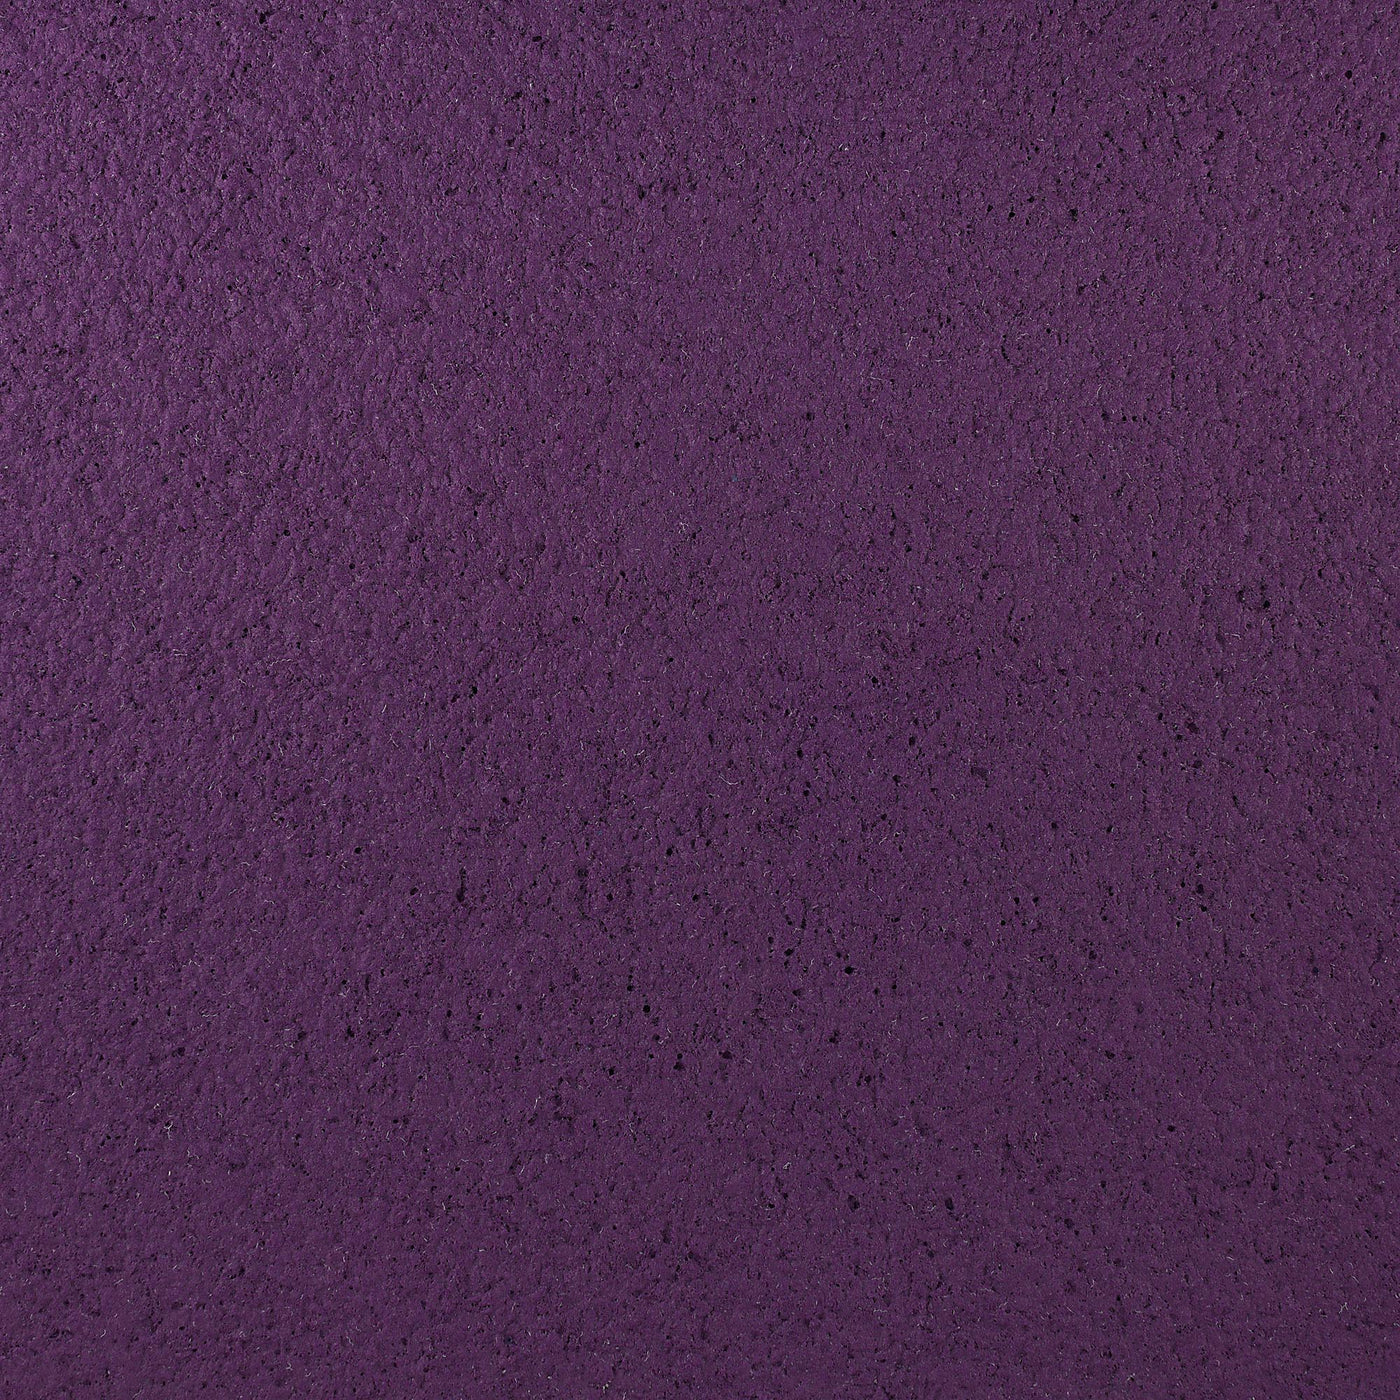 Cotton plaster color decor blackberry